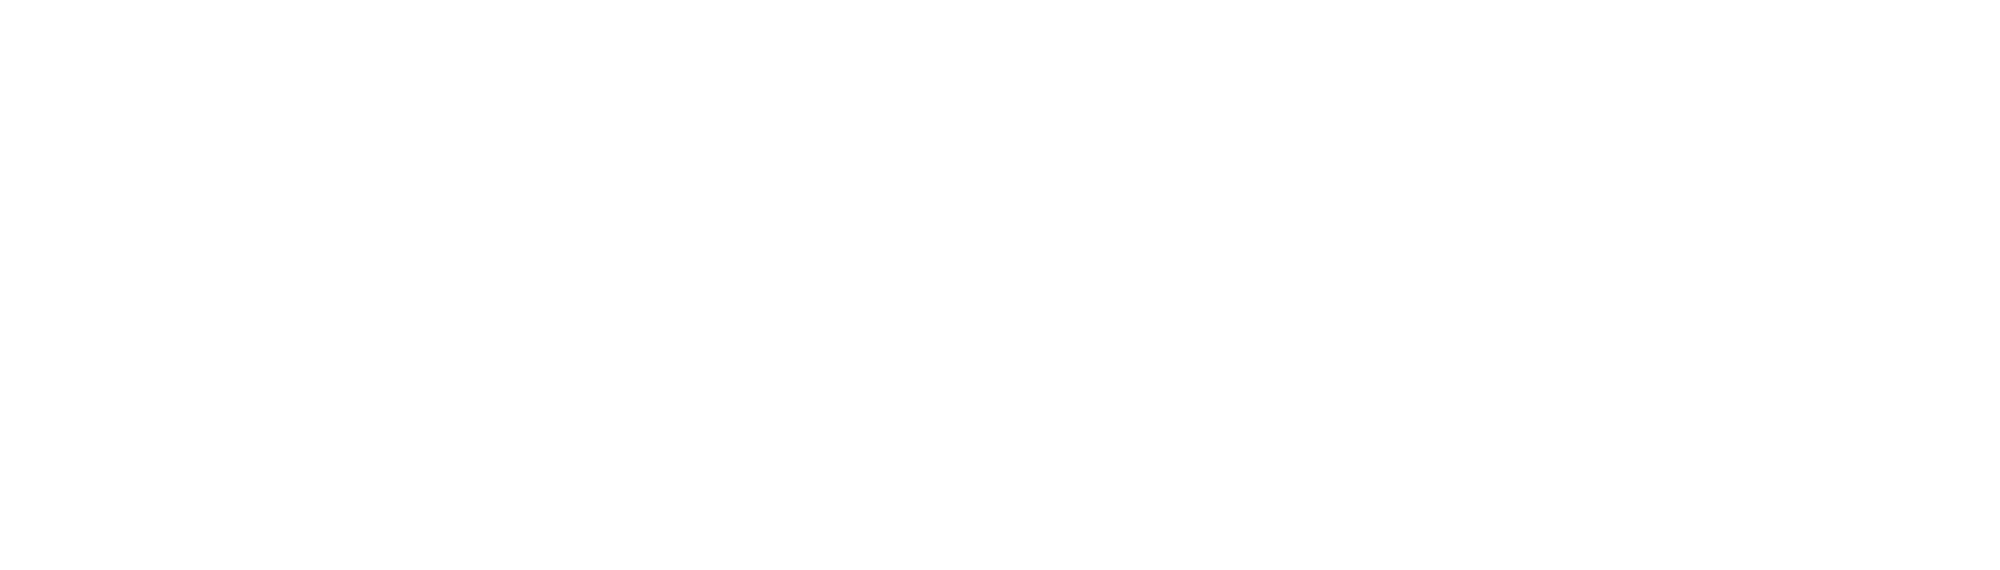 Tech Guidenerd